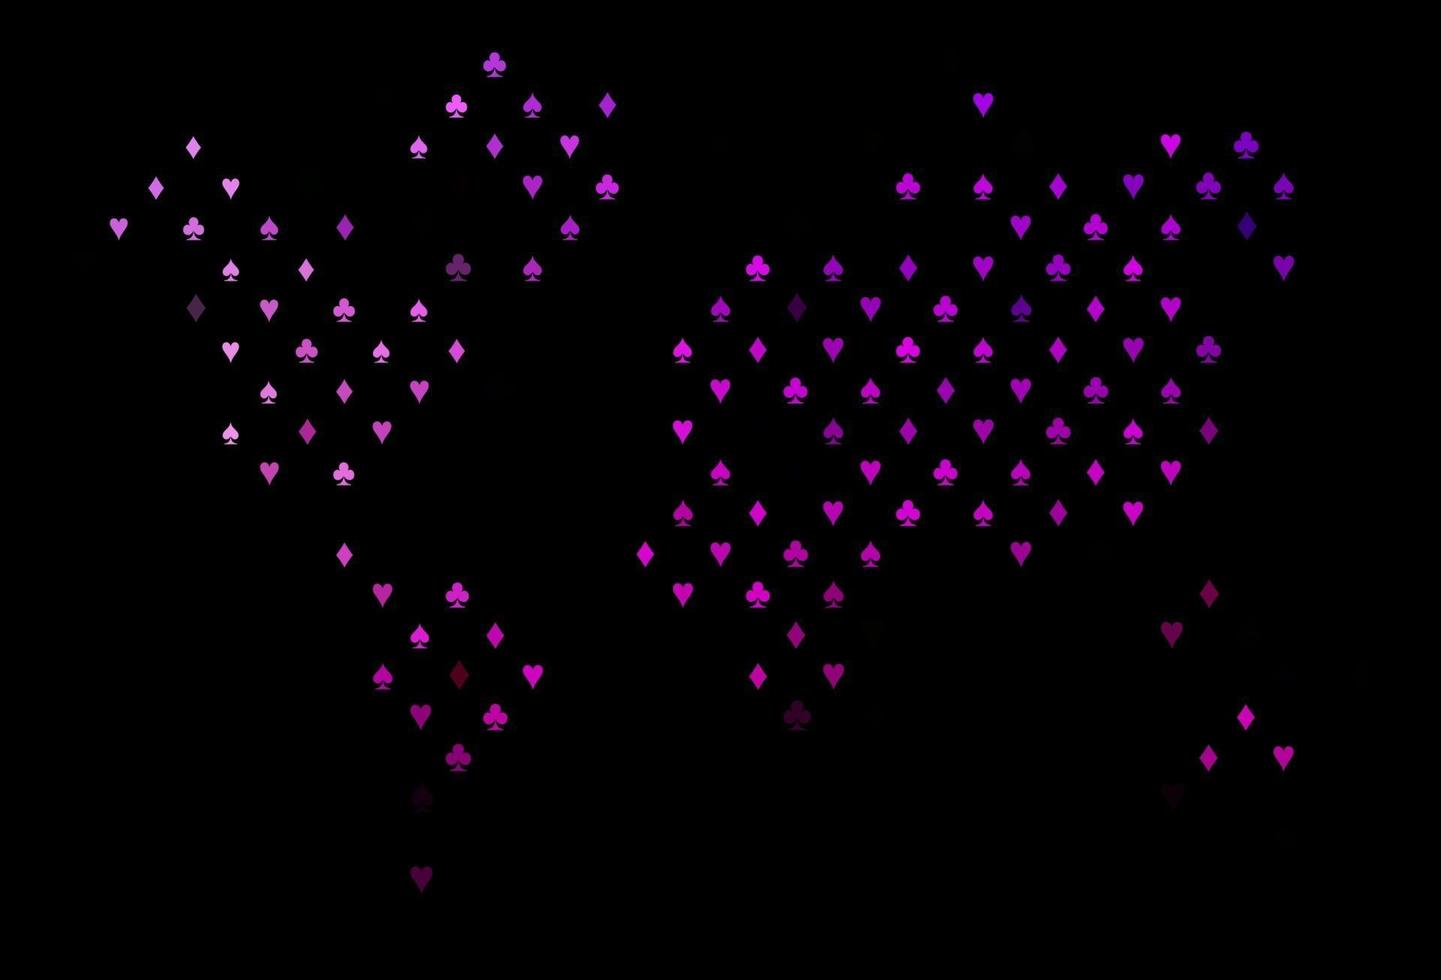 modello vettoriale viola scuro con il simbolo delle carte.